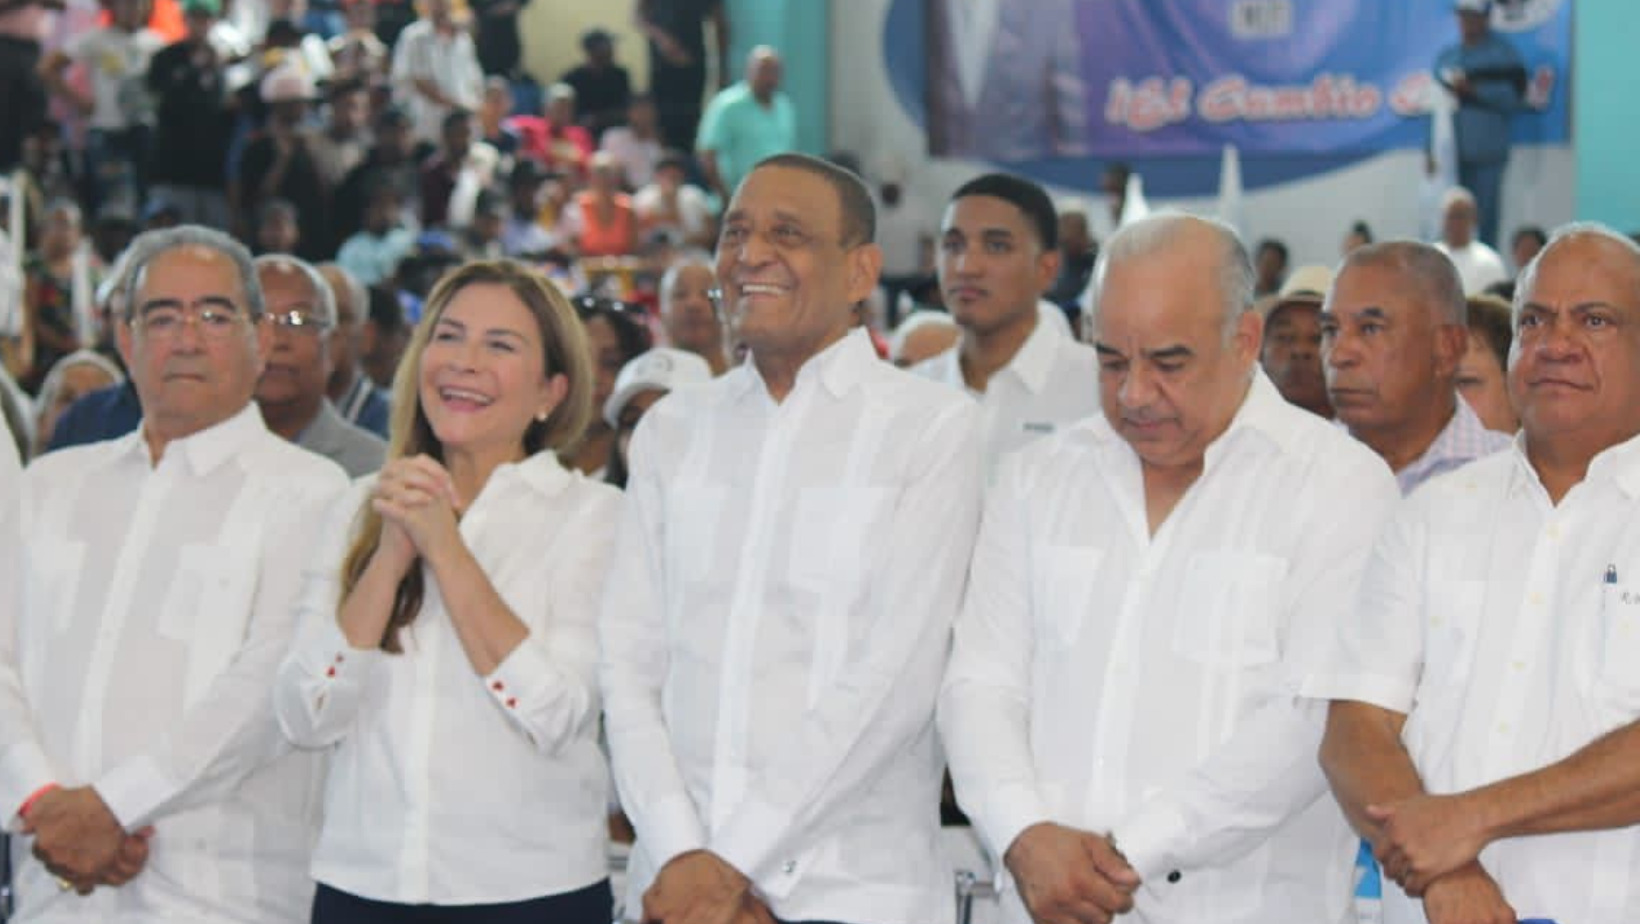 La acalde del Distrito Nacional, Carolina Mejía en compañía de dirigentes del movimiento Electoral Peñagomista. Foto: Fuente externa